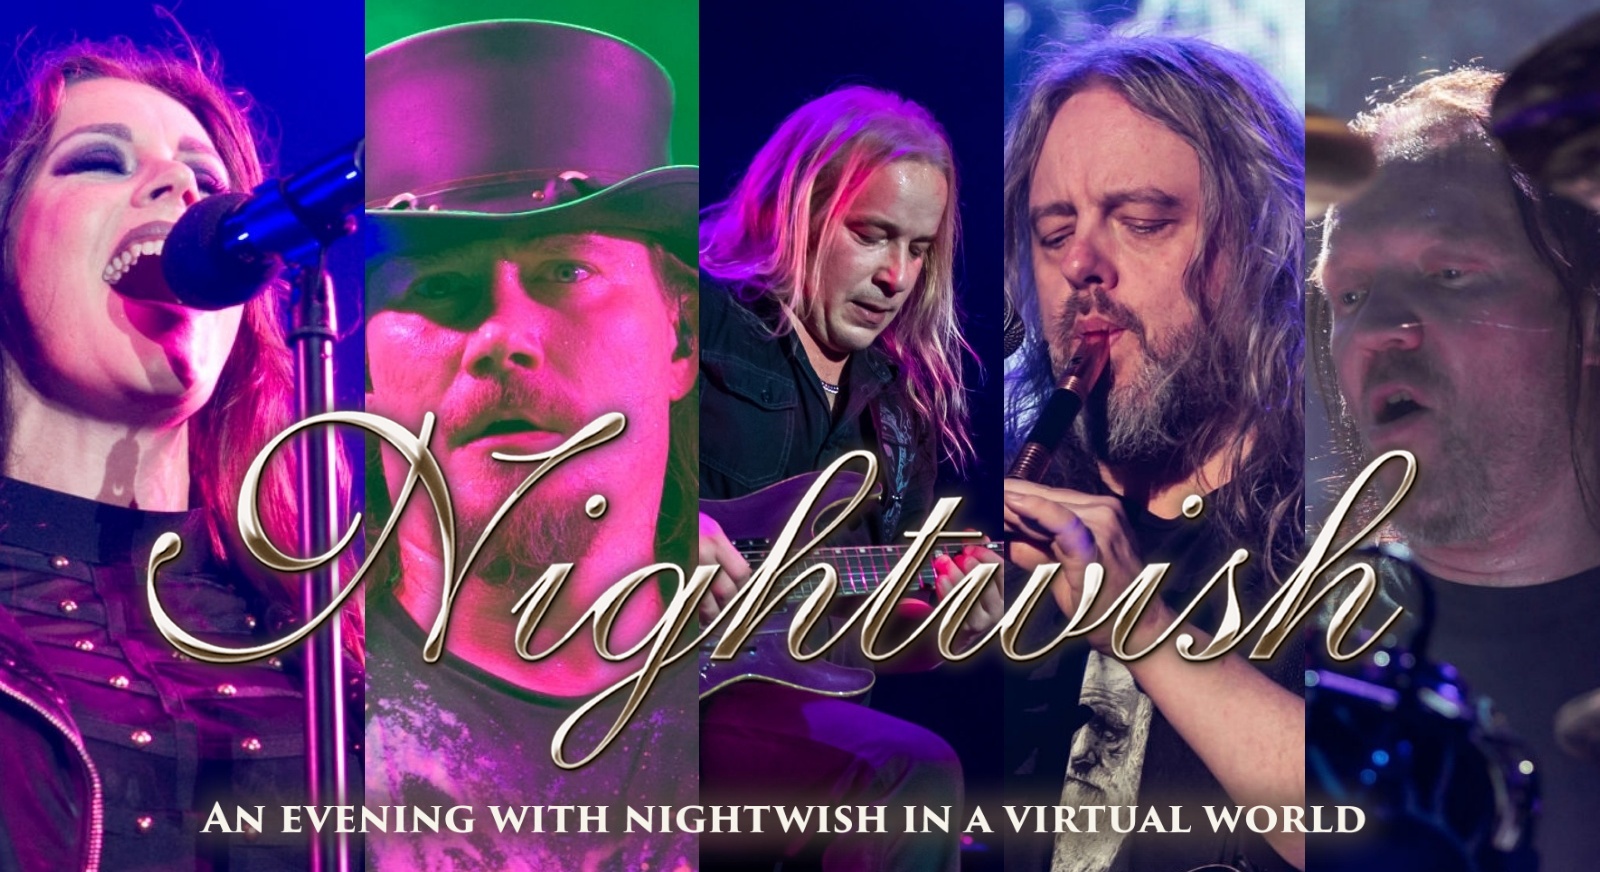 Elkészült a Nightwish virtuális koncertje – holnap premier!